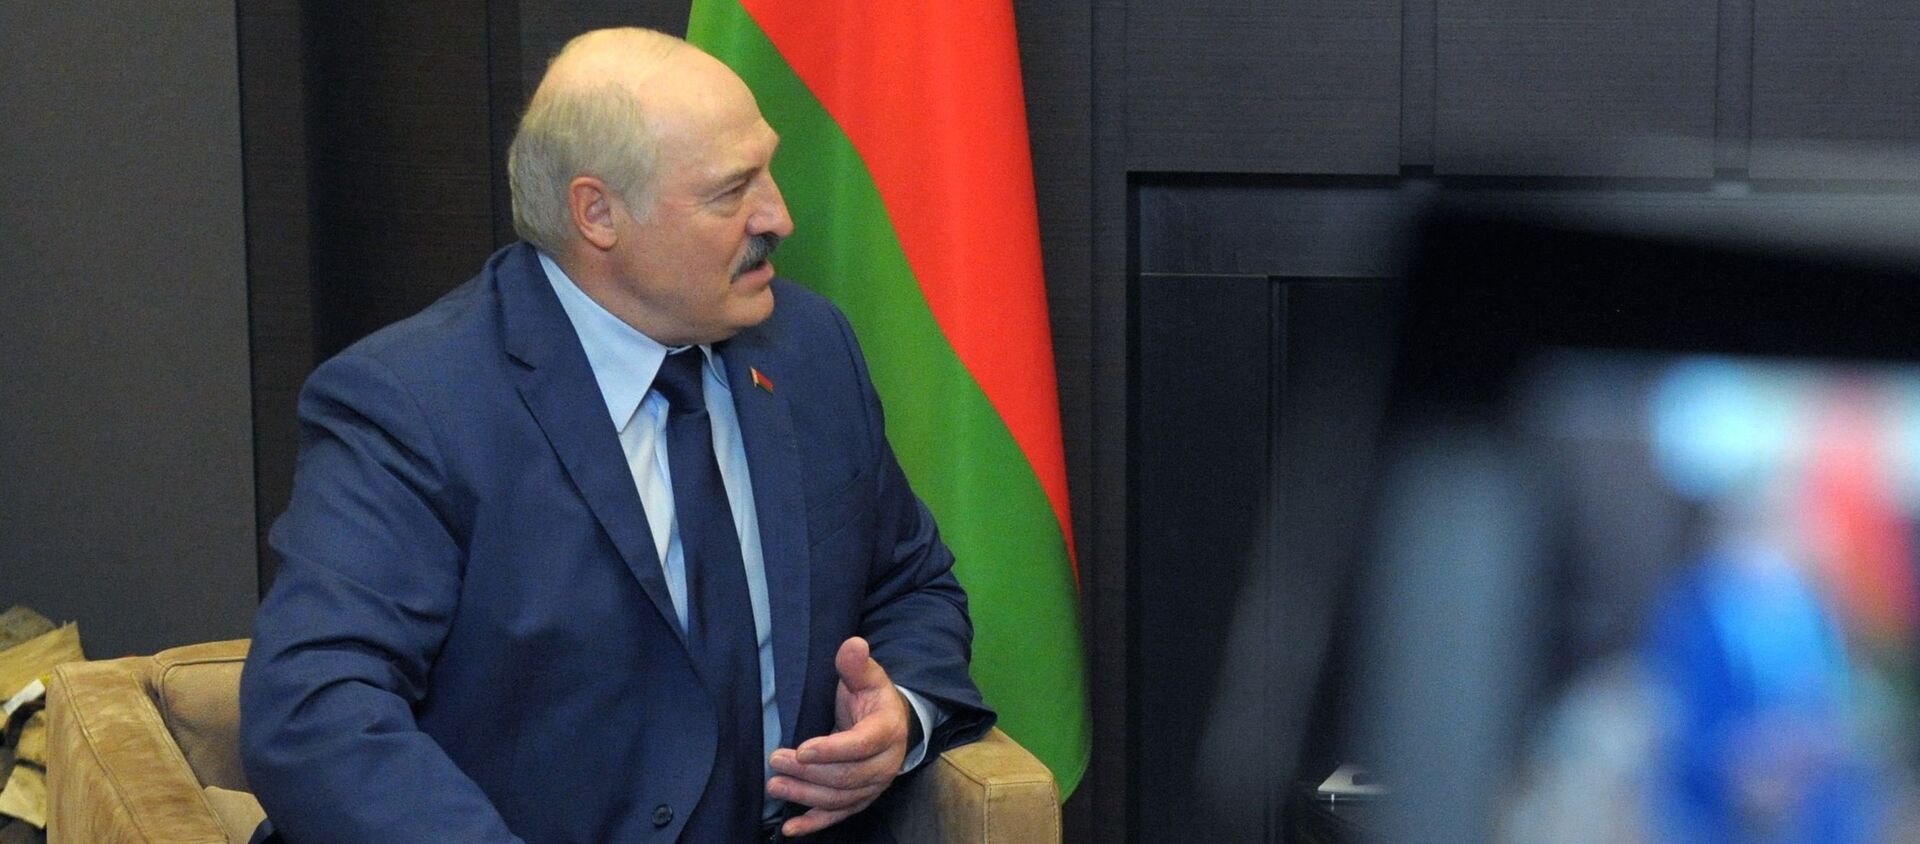 Александр Лукашенко во время встречи с президентом РФ Владимиром Путиным - Sputnik Беларусь, 1920, 01.06.2021